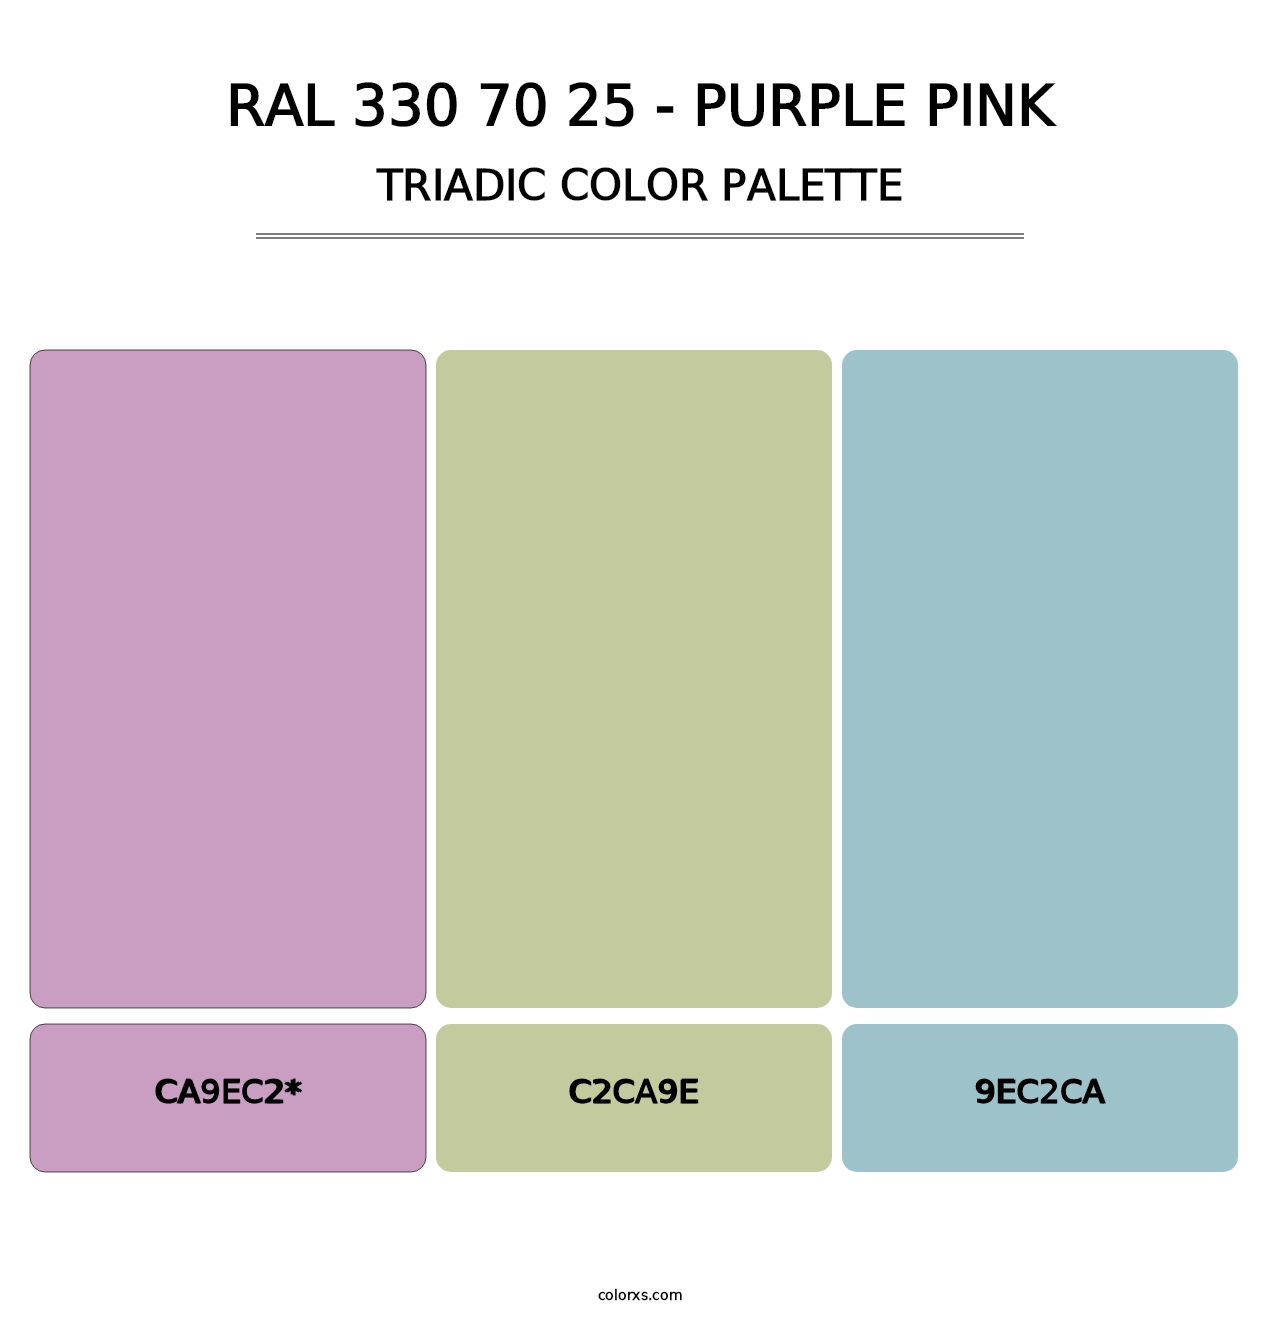 RAL 330 70 25 - Purple Pink - Triadic Color Palette